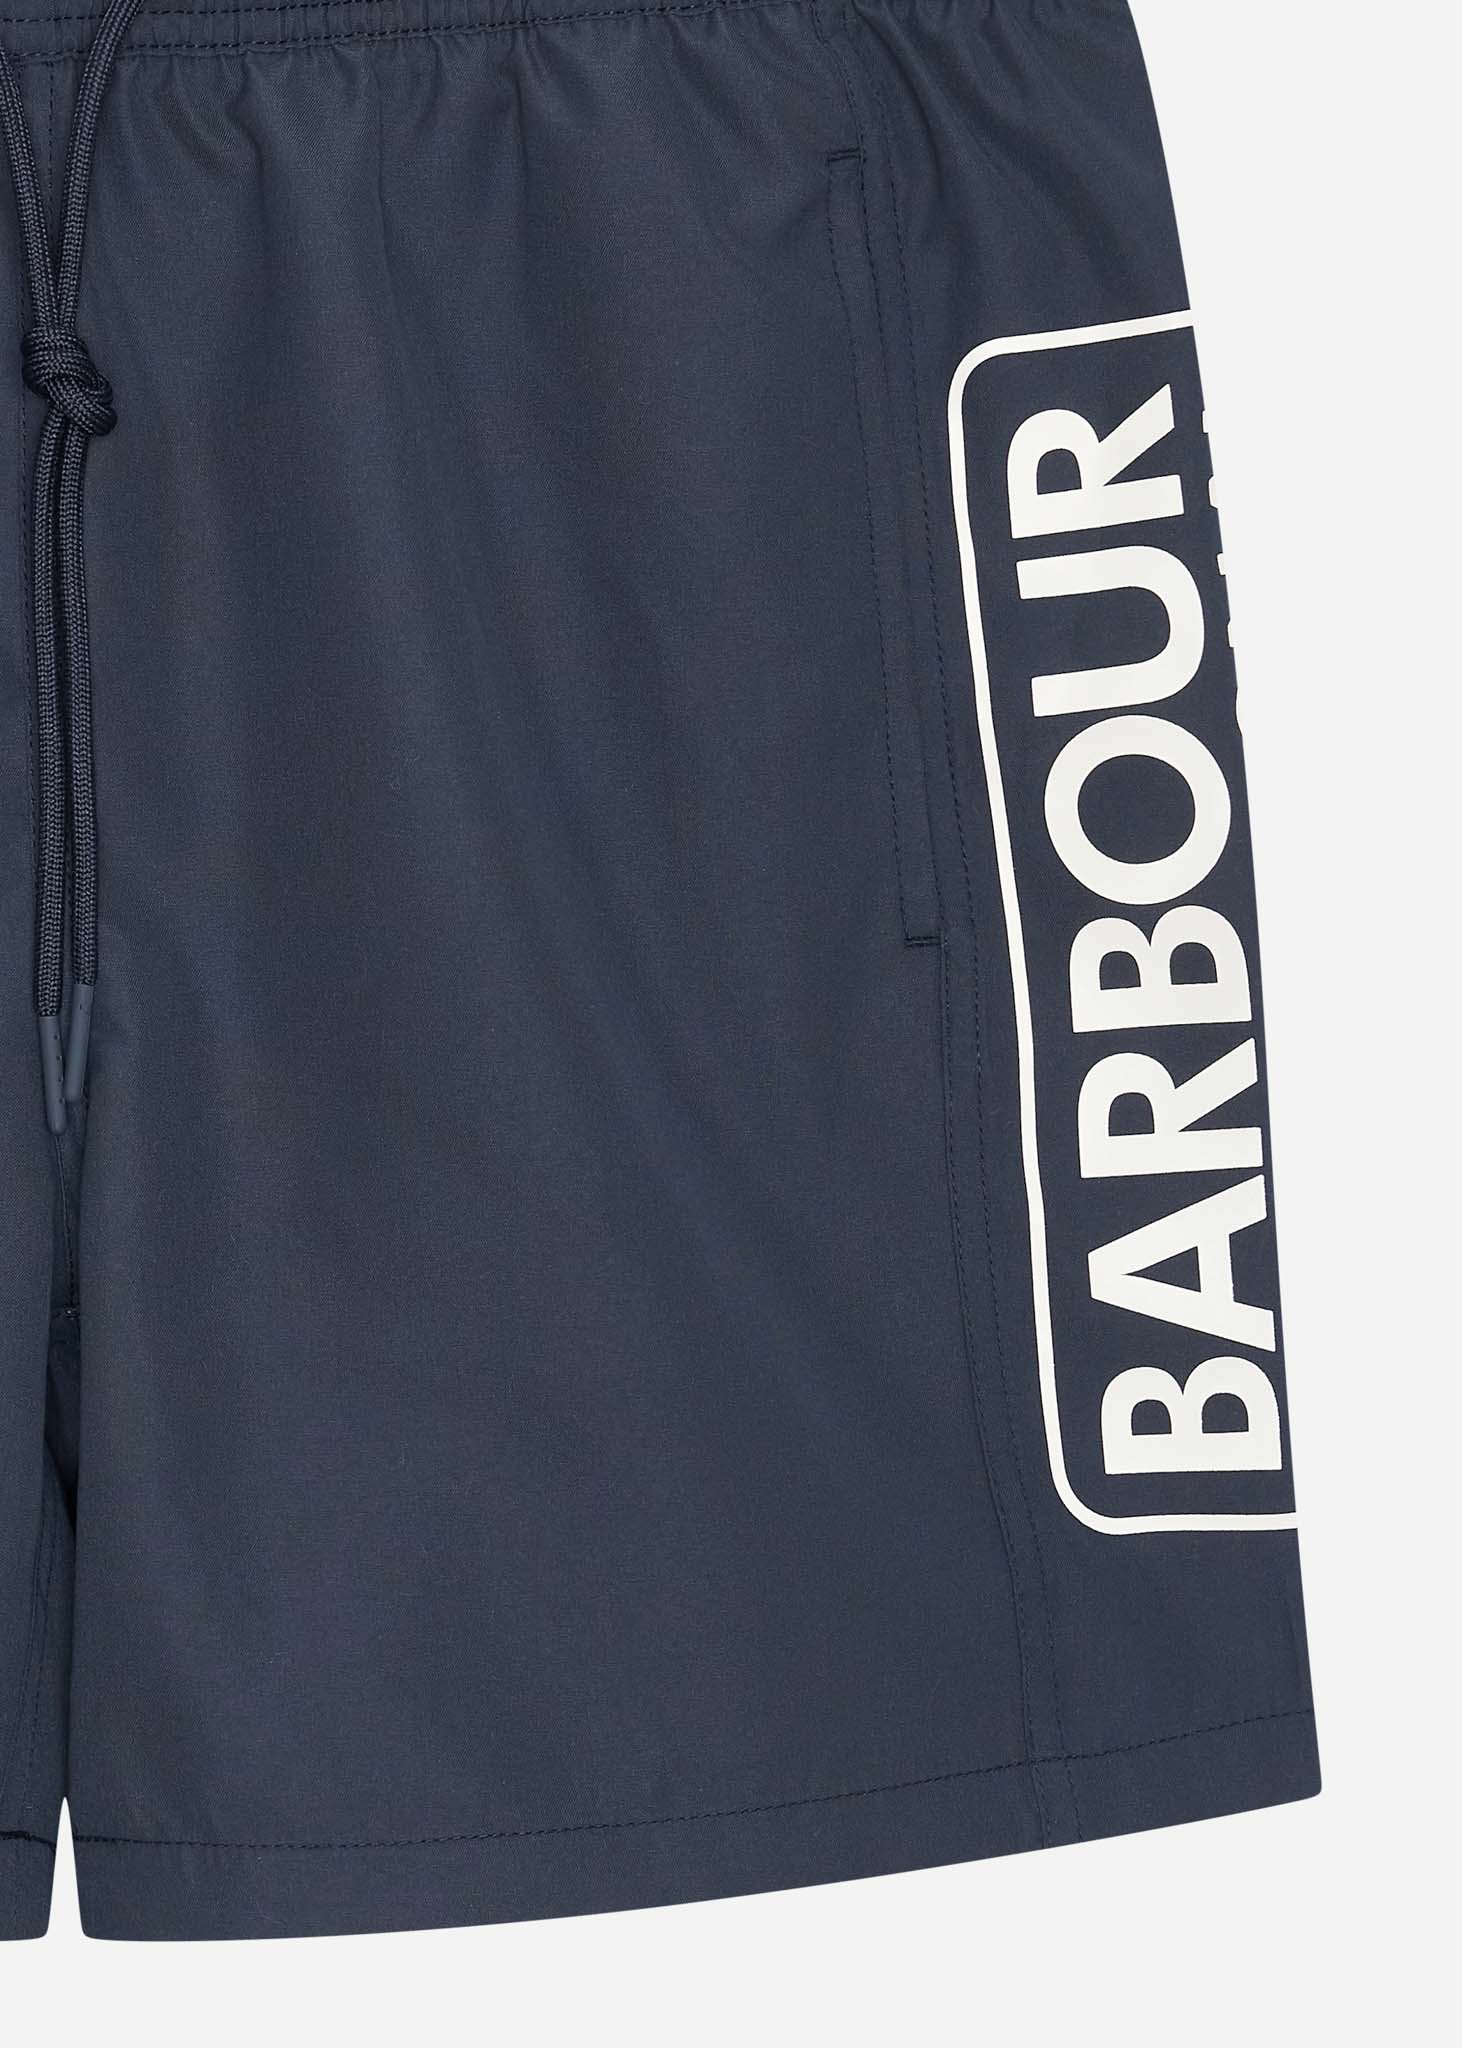 Barbour International Zwembroeken  Large logo swim short - navy 